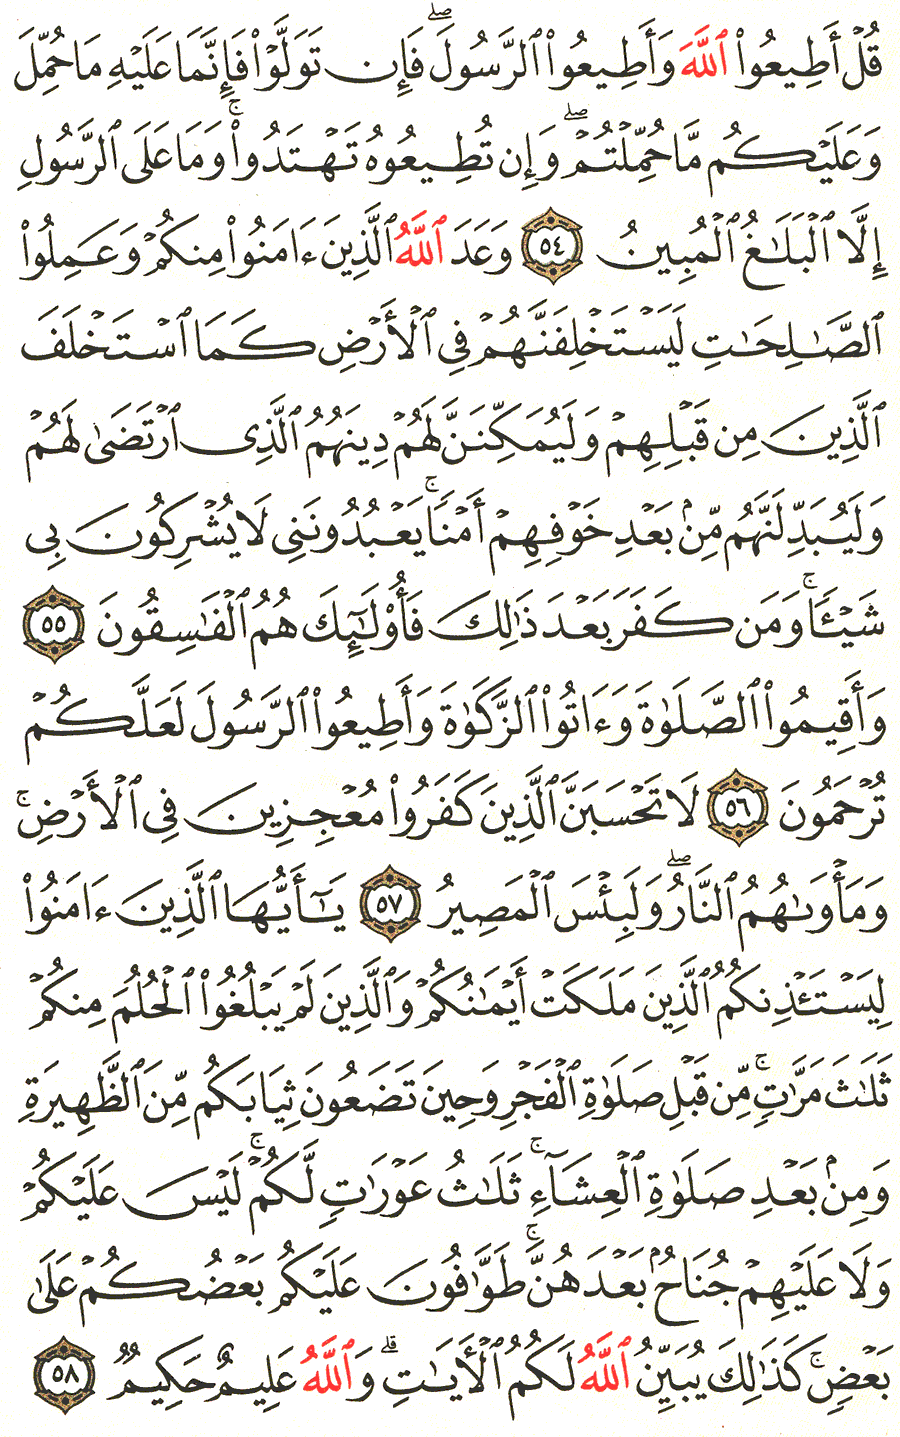 الصفحة 357 من القرآن الكريم